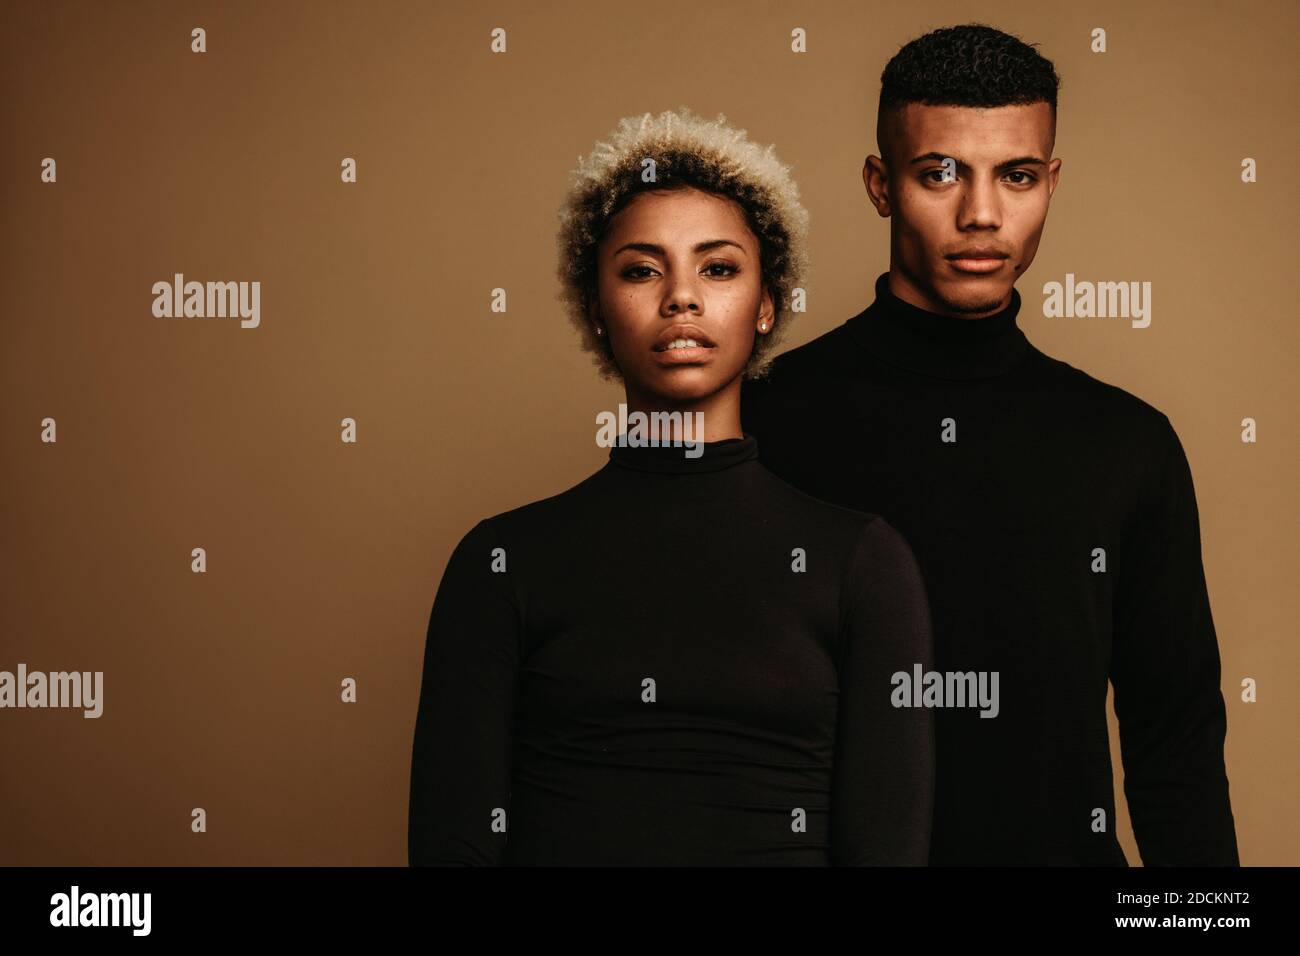 Coppia su sfondo marrone in abiti neri. Ritratto dell'uomo e della donna afro-americani. Foto Stock